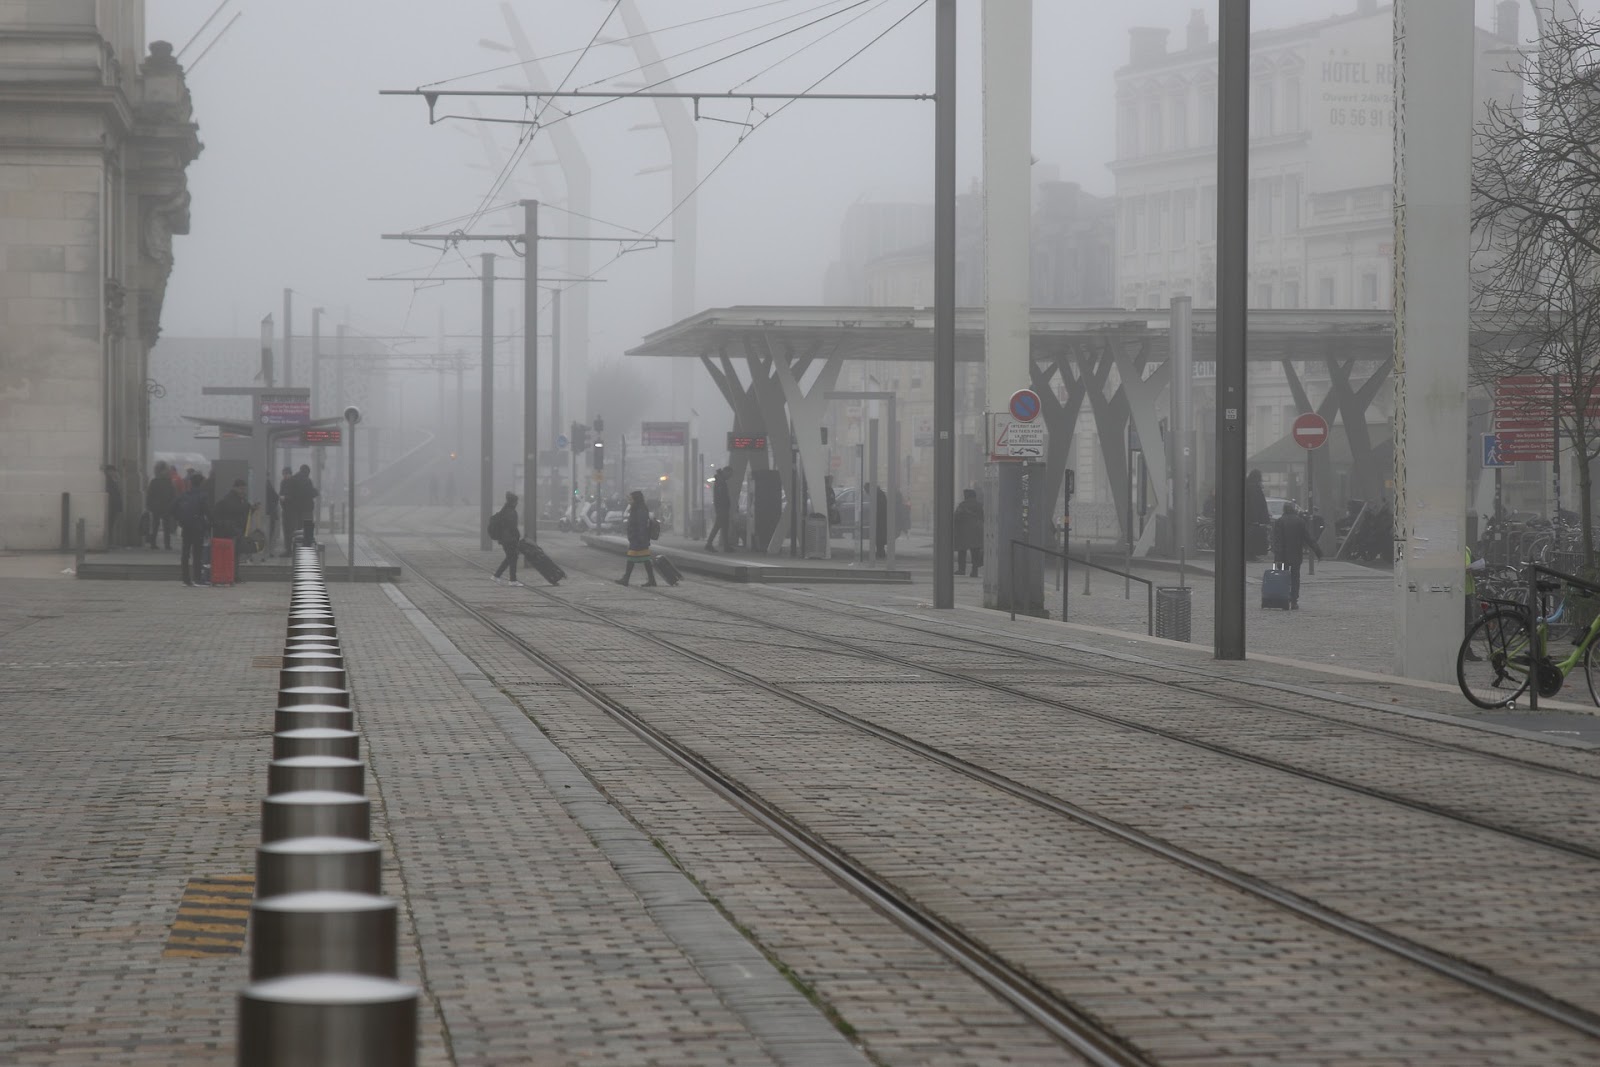 A foggy train station